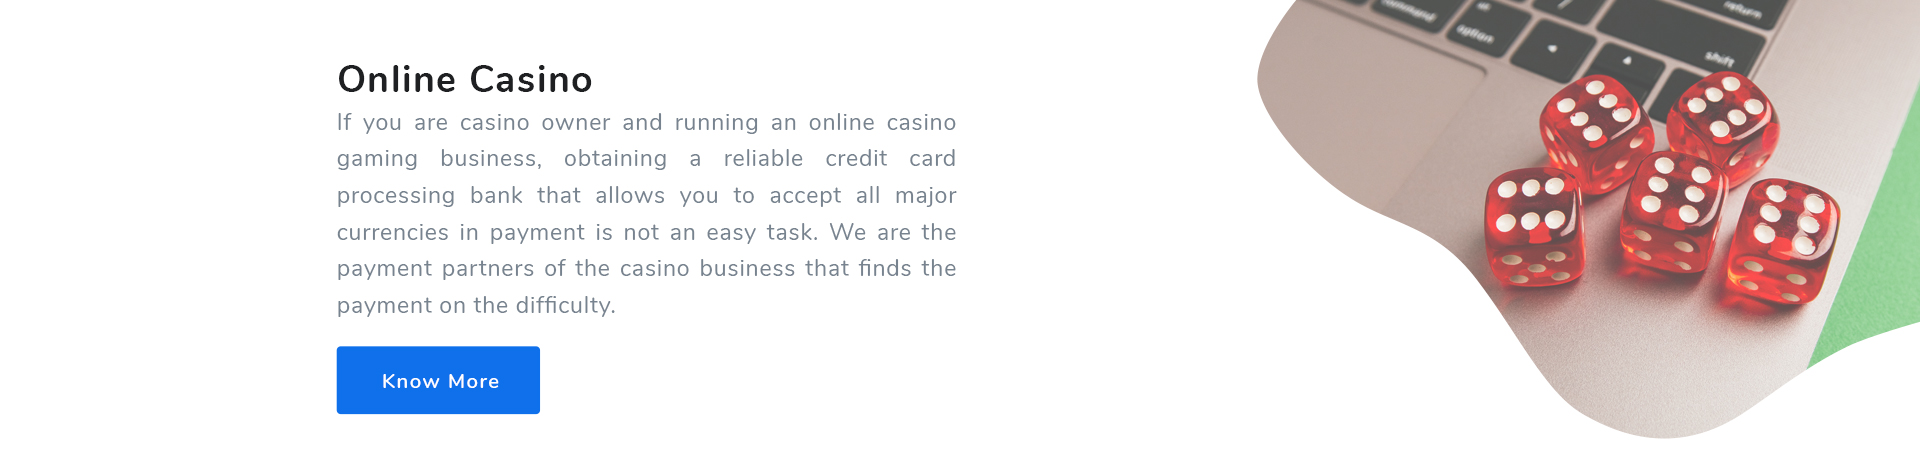 Online Casino Merchant Account Solutions in London UK